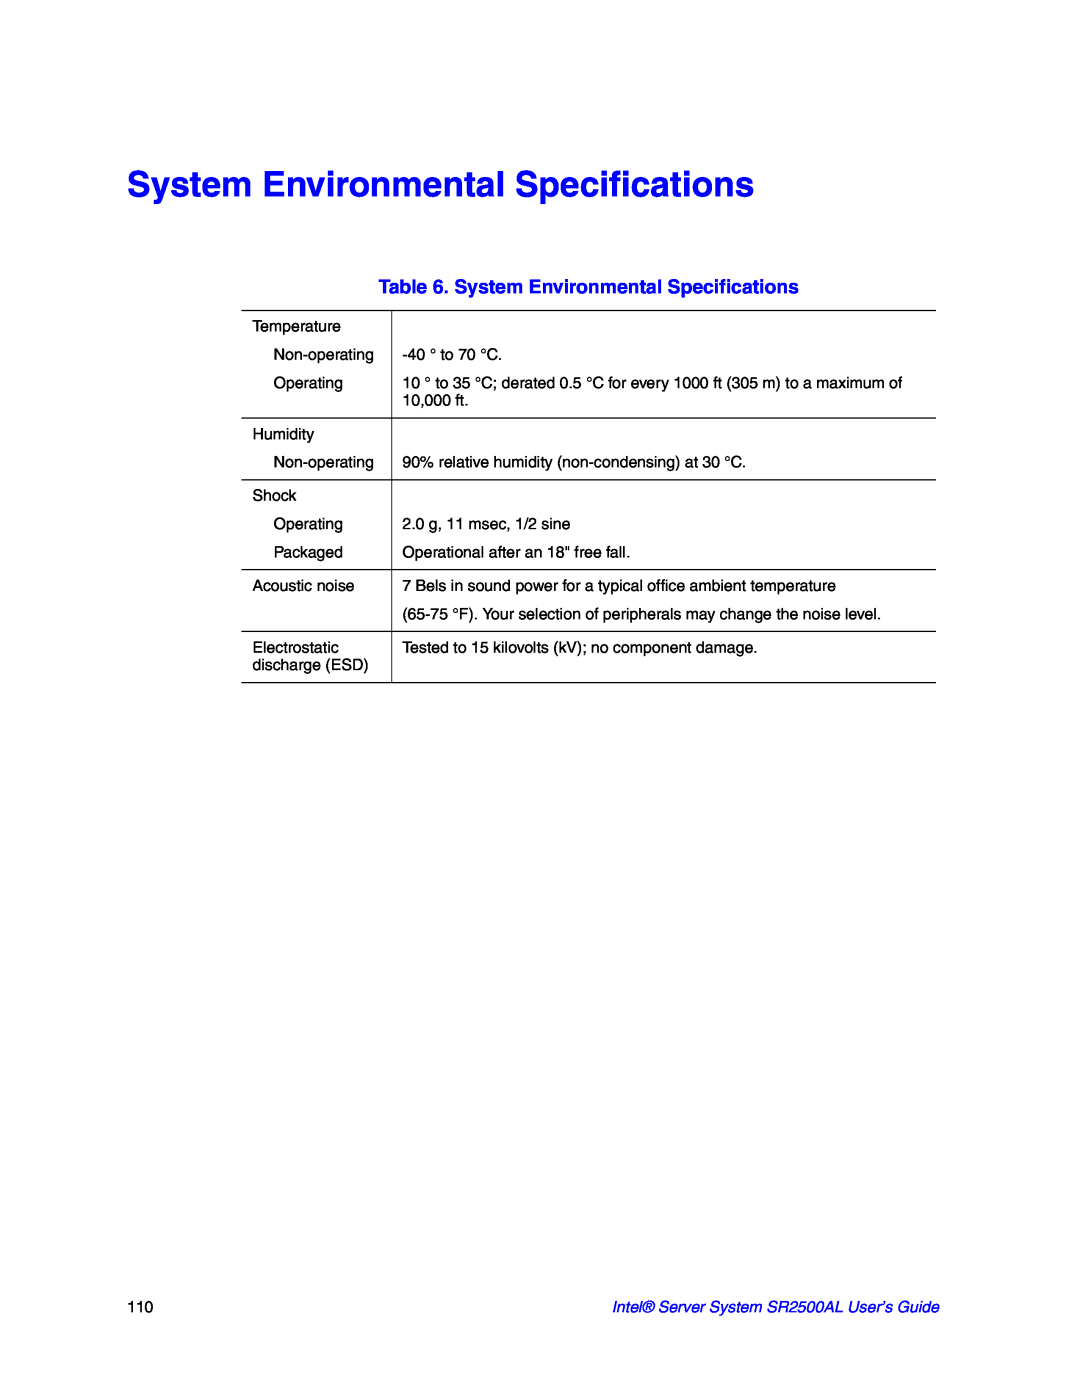 Intel SR2500AL manual System Environmental Specifications 